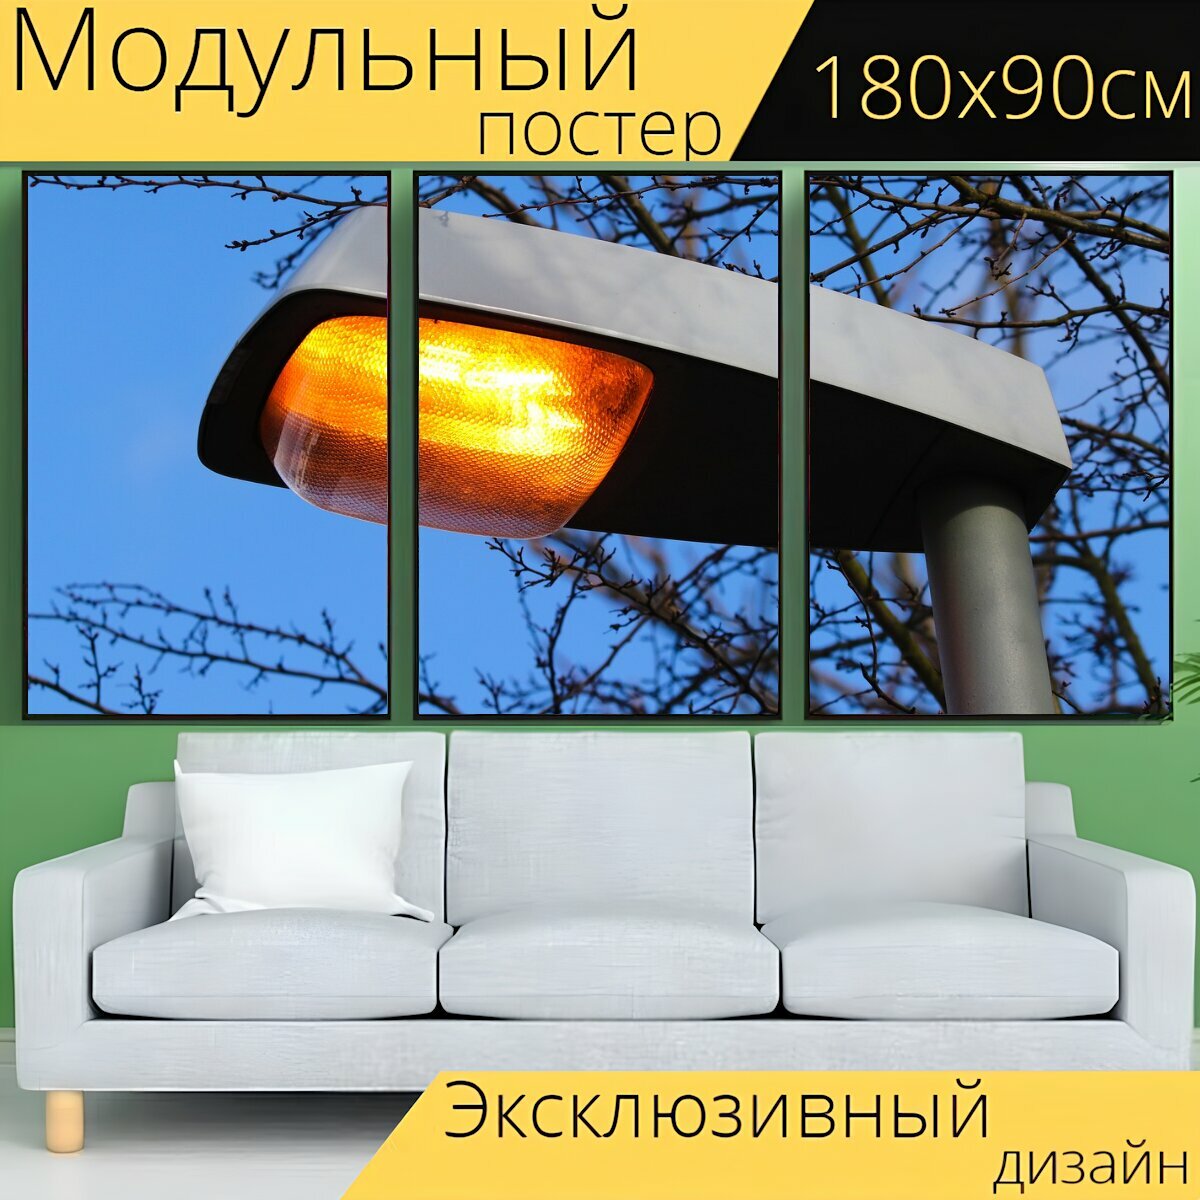 Модульный постер "Уличный фонарь, свет, улица свет" 180 x 90 см. для интерьера